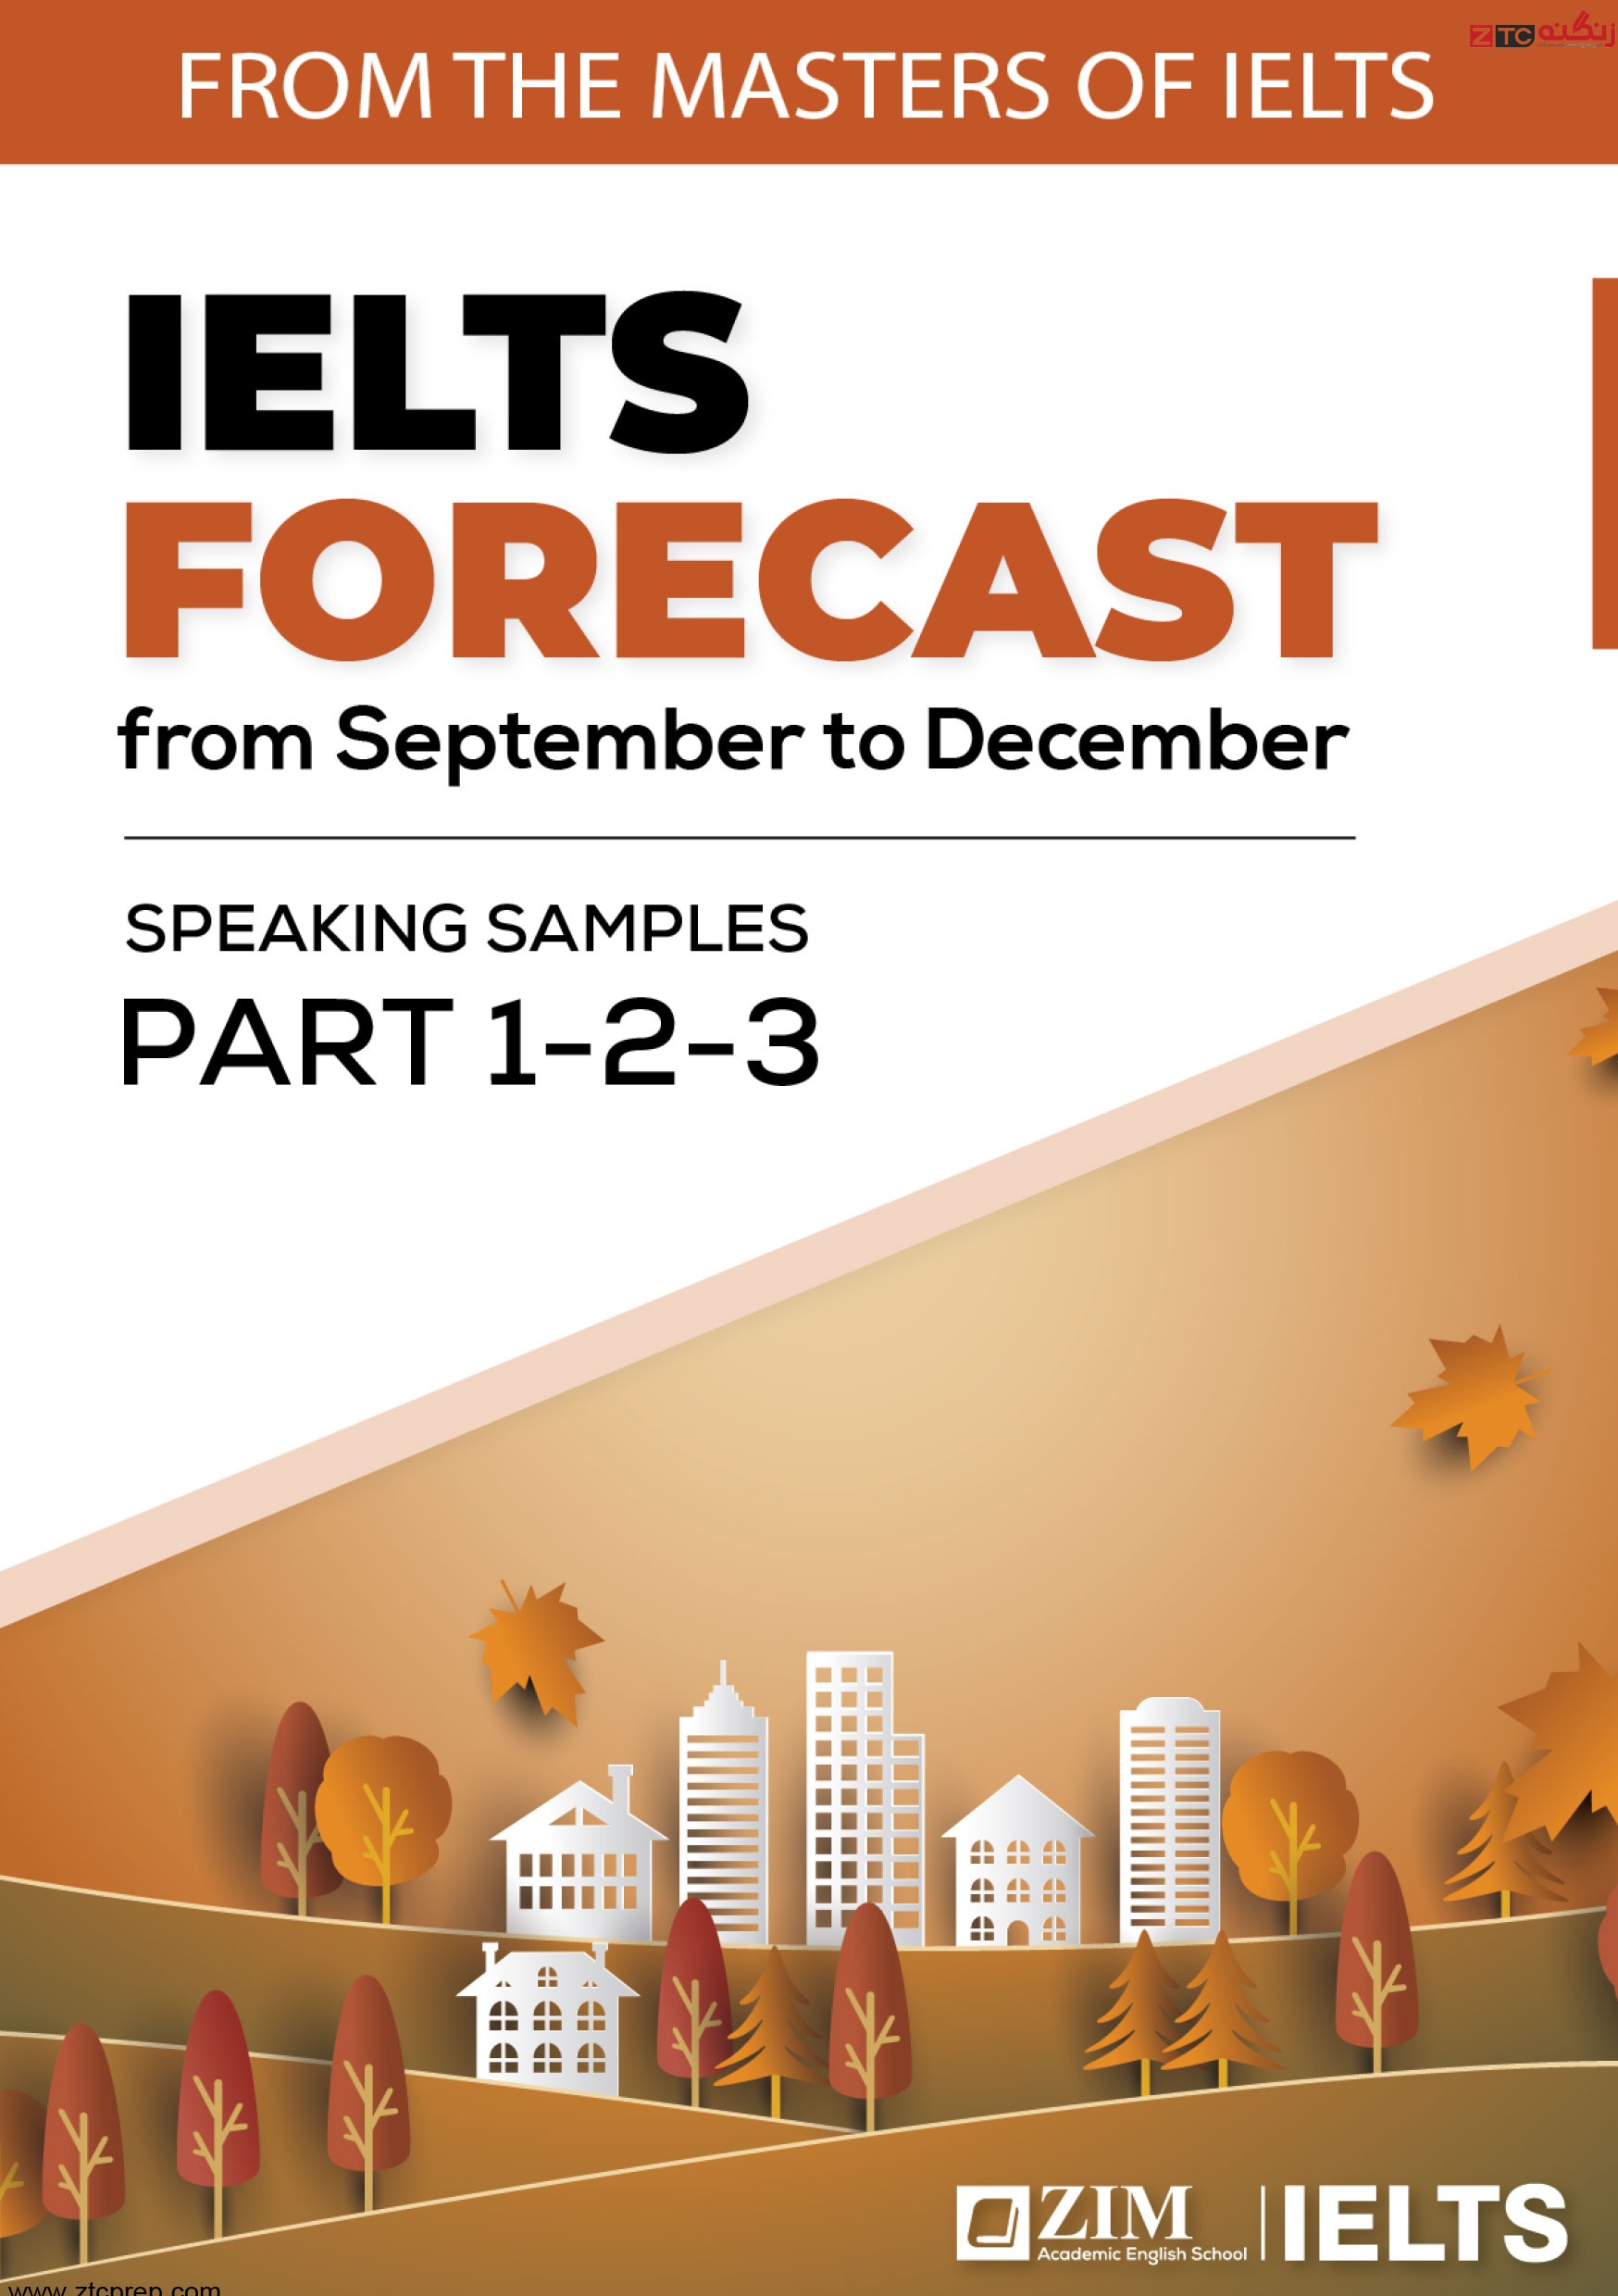 IELTS Speaking Samples Forecast From September to December